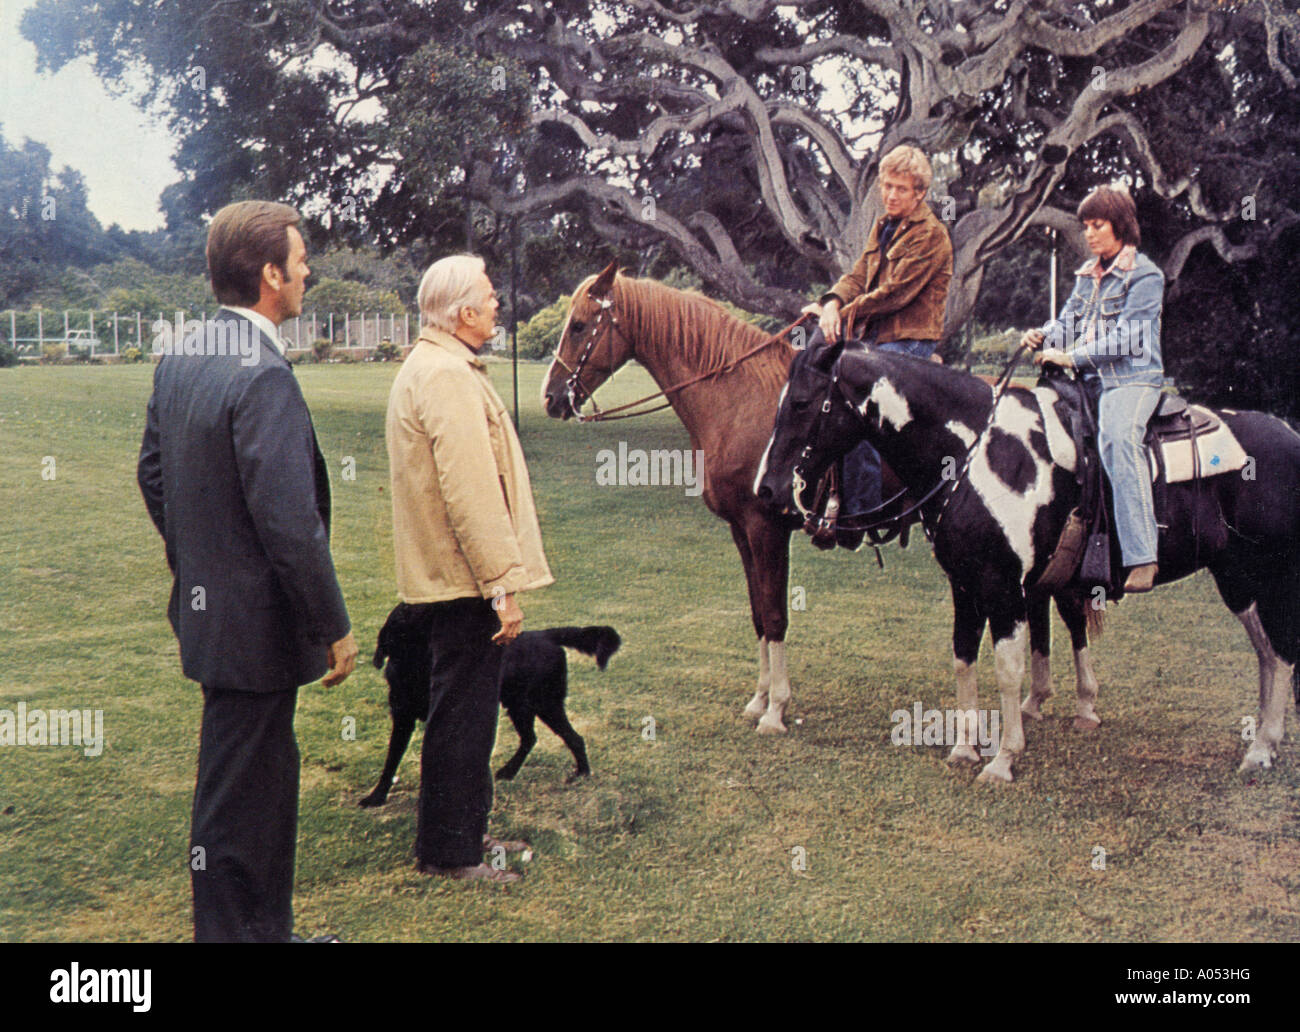 DIE Affäre 1973 Rechtschreibung-Goldberg TV-Film mit Robert Wagner auf der linken Seite und Nathalie Wood und Bruce Davidson auf die Pferde Stockfoto